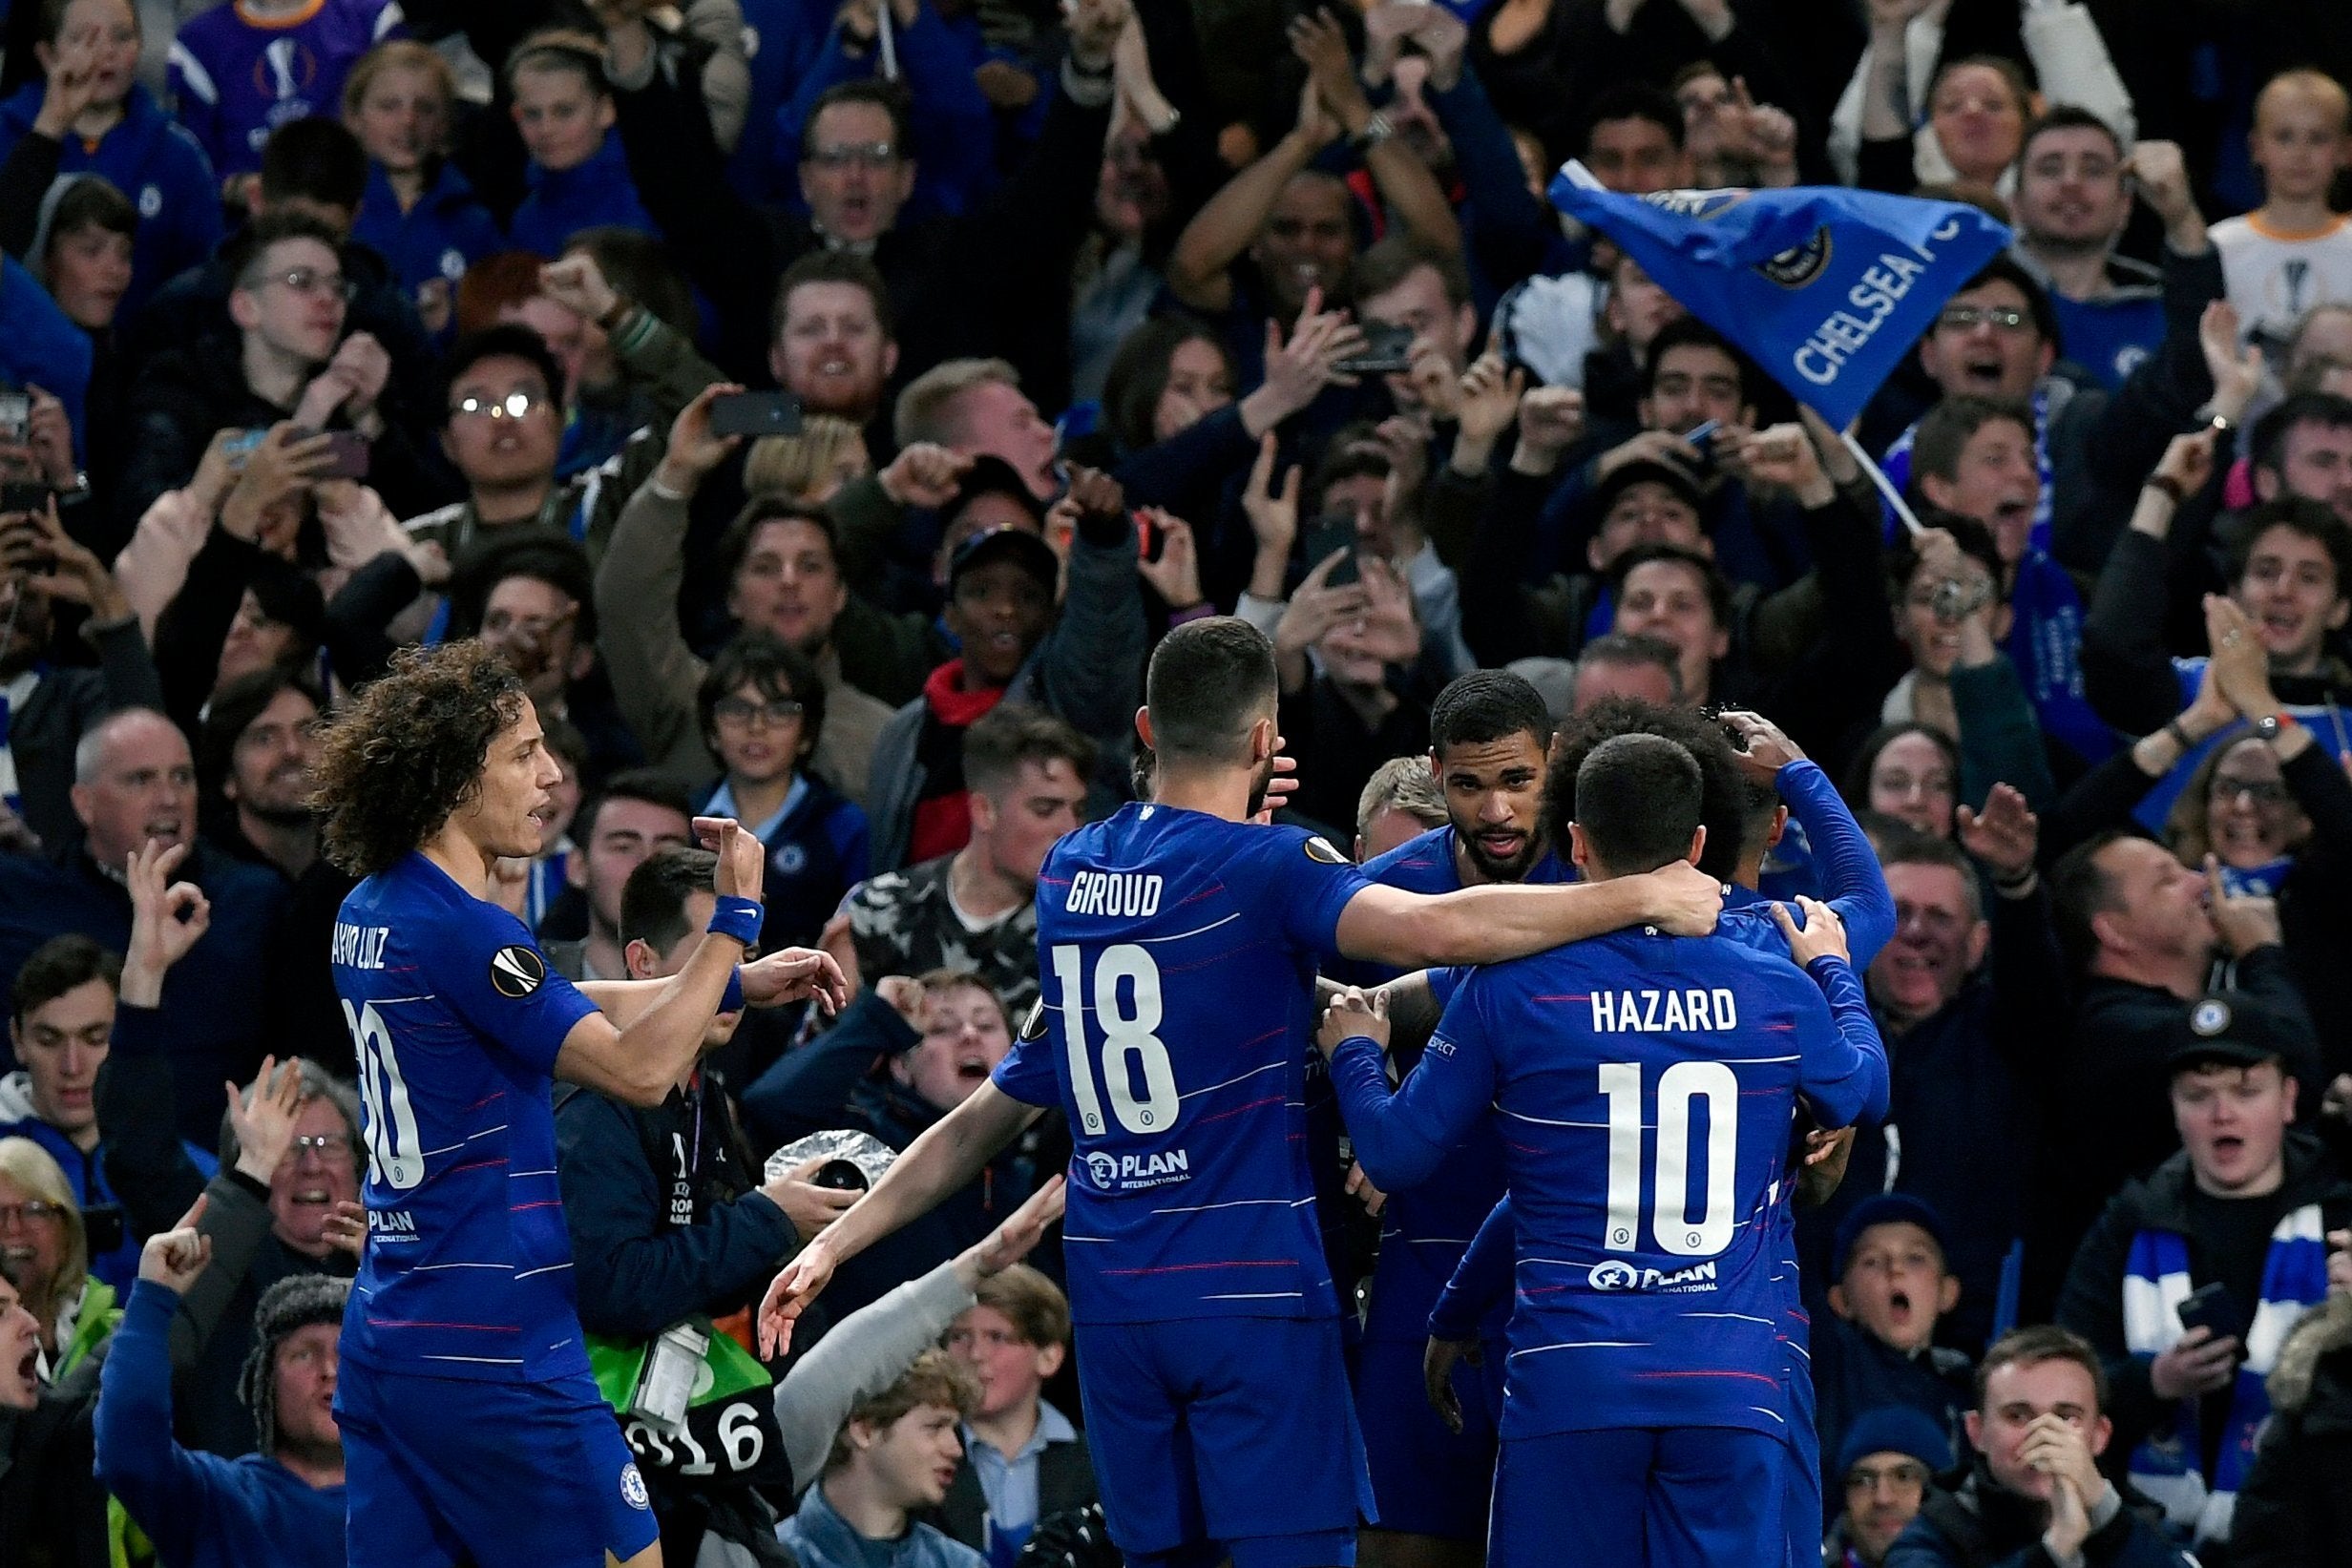 Chelsea celebrate breaking the deadlock